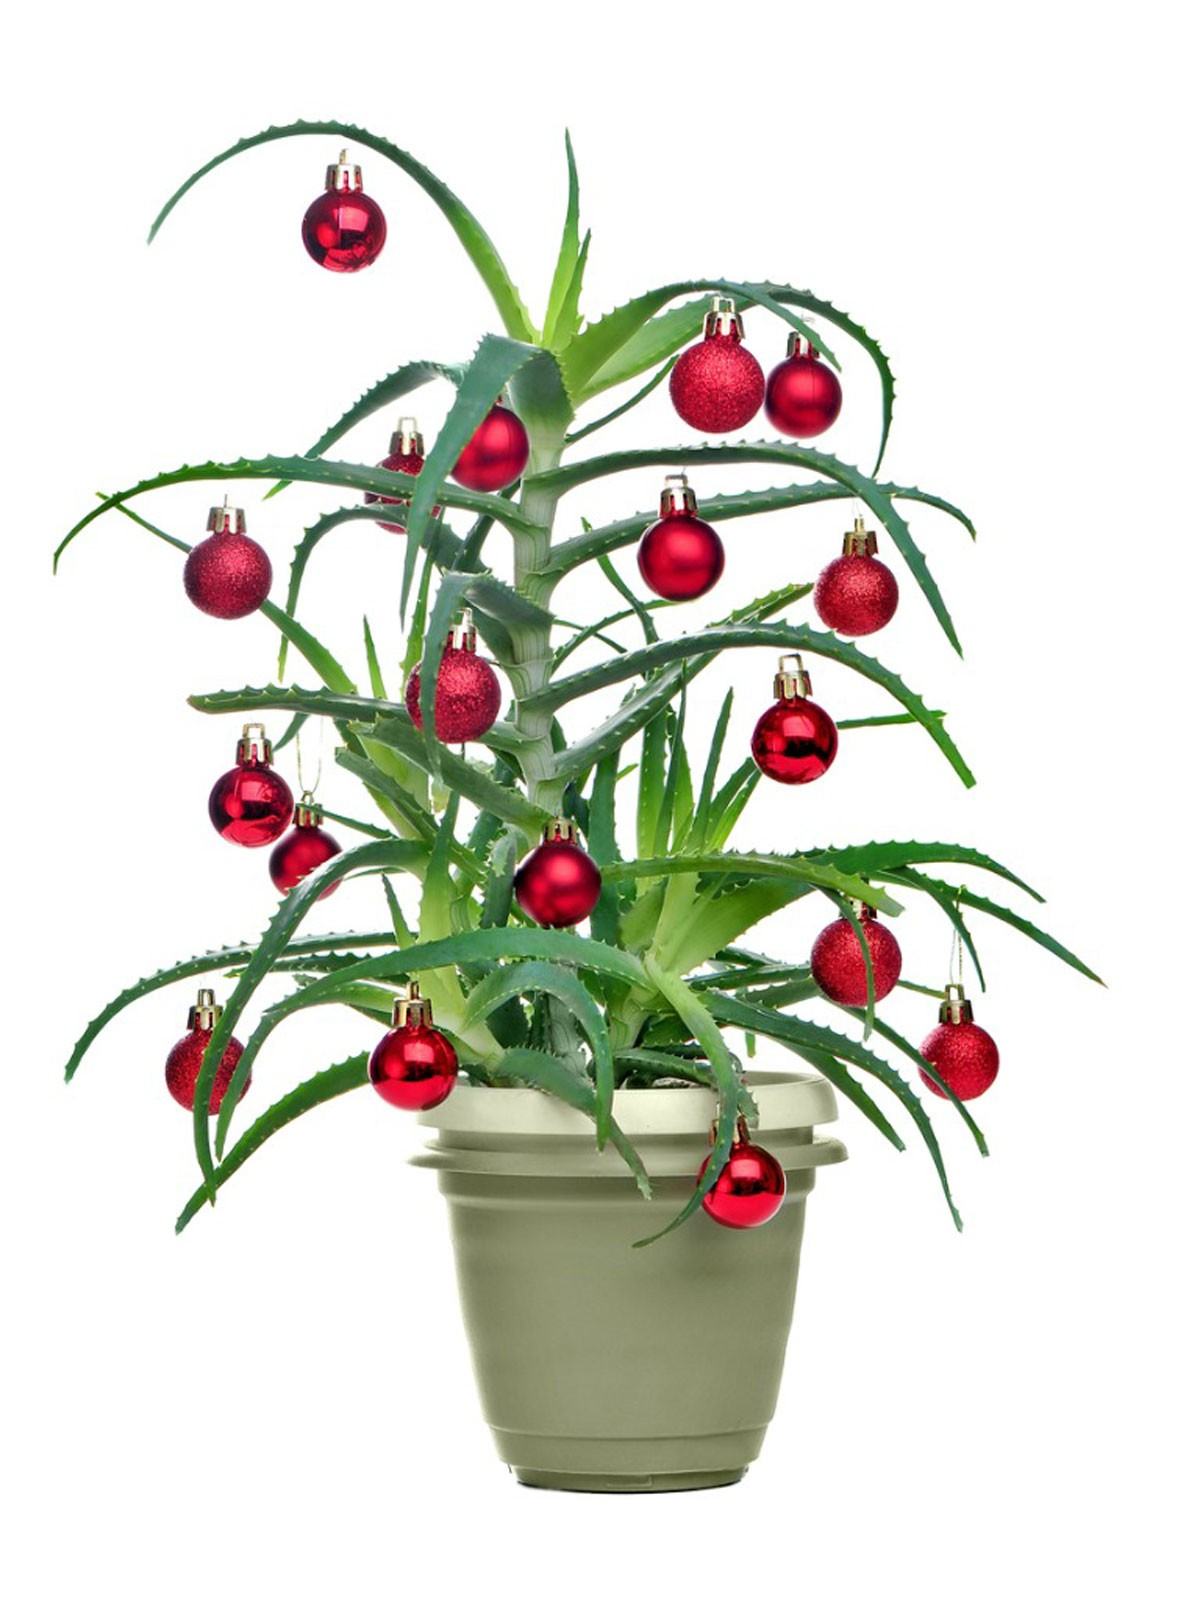 Olağandışı Noel Ağaçları: Büyüyen Noel Ağacı Alternatifleri